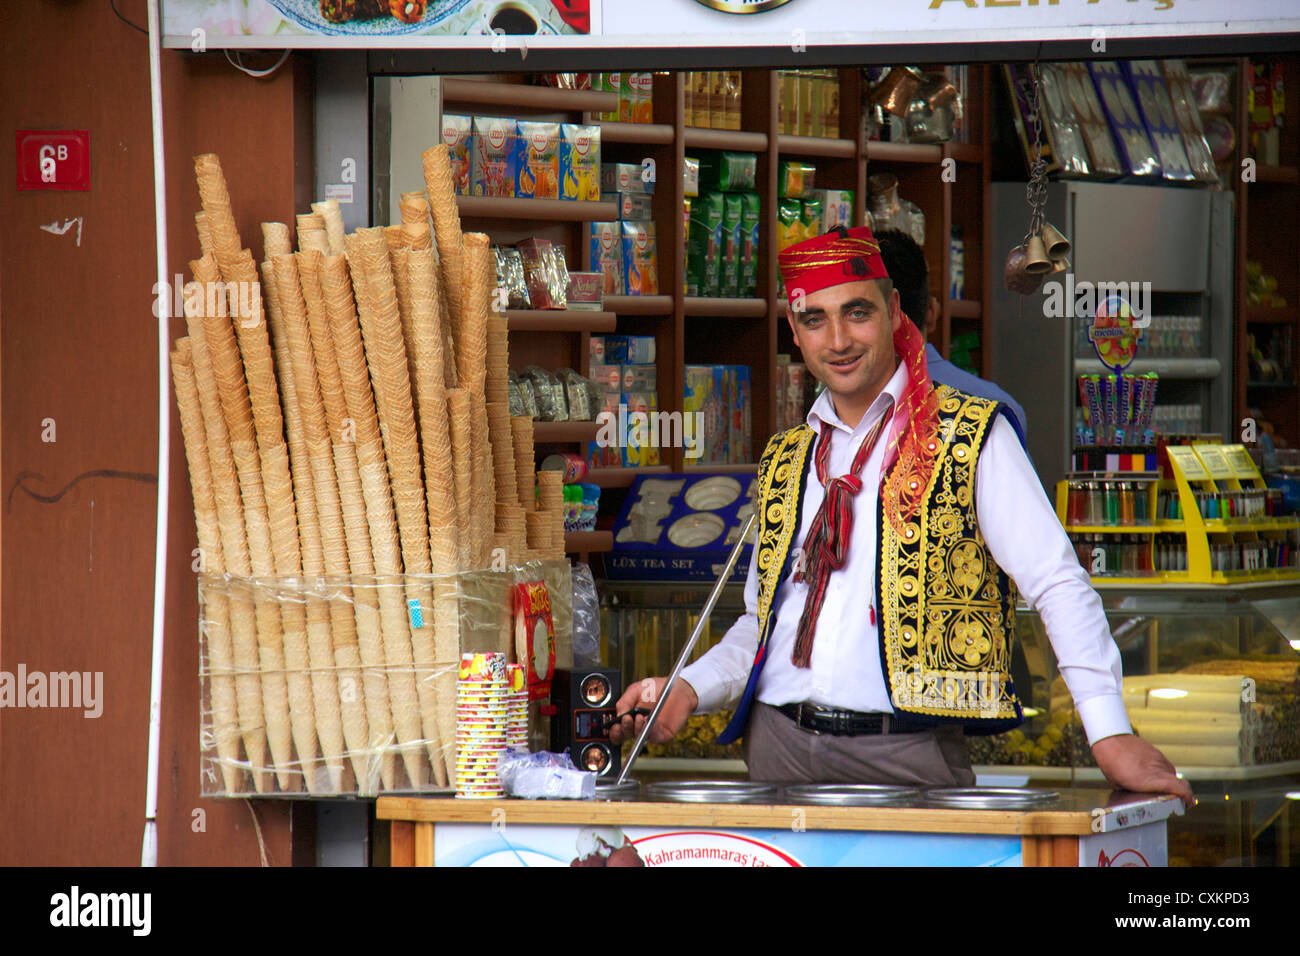 Vendeur de crème glacée de kahramanmaras traditionnelle portant une robe traditionnelle turque, Istanbul, Turquie Banque D'Images